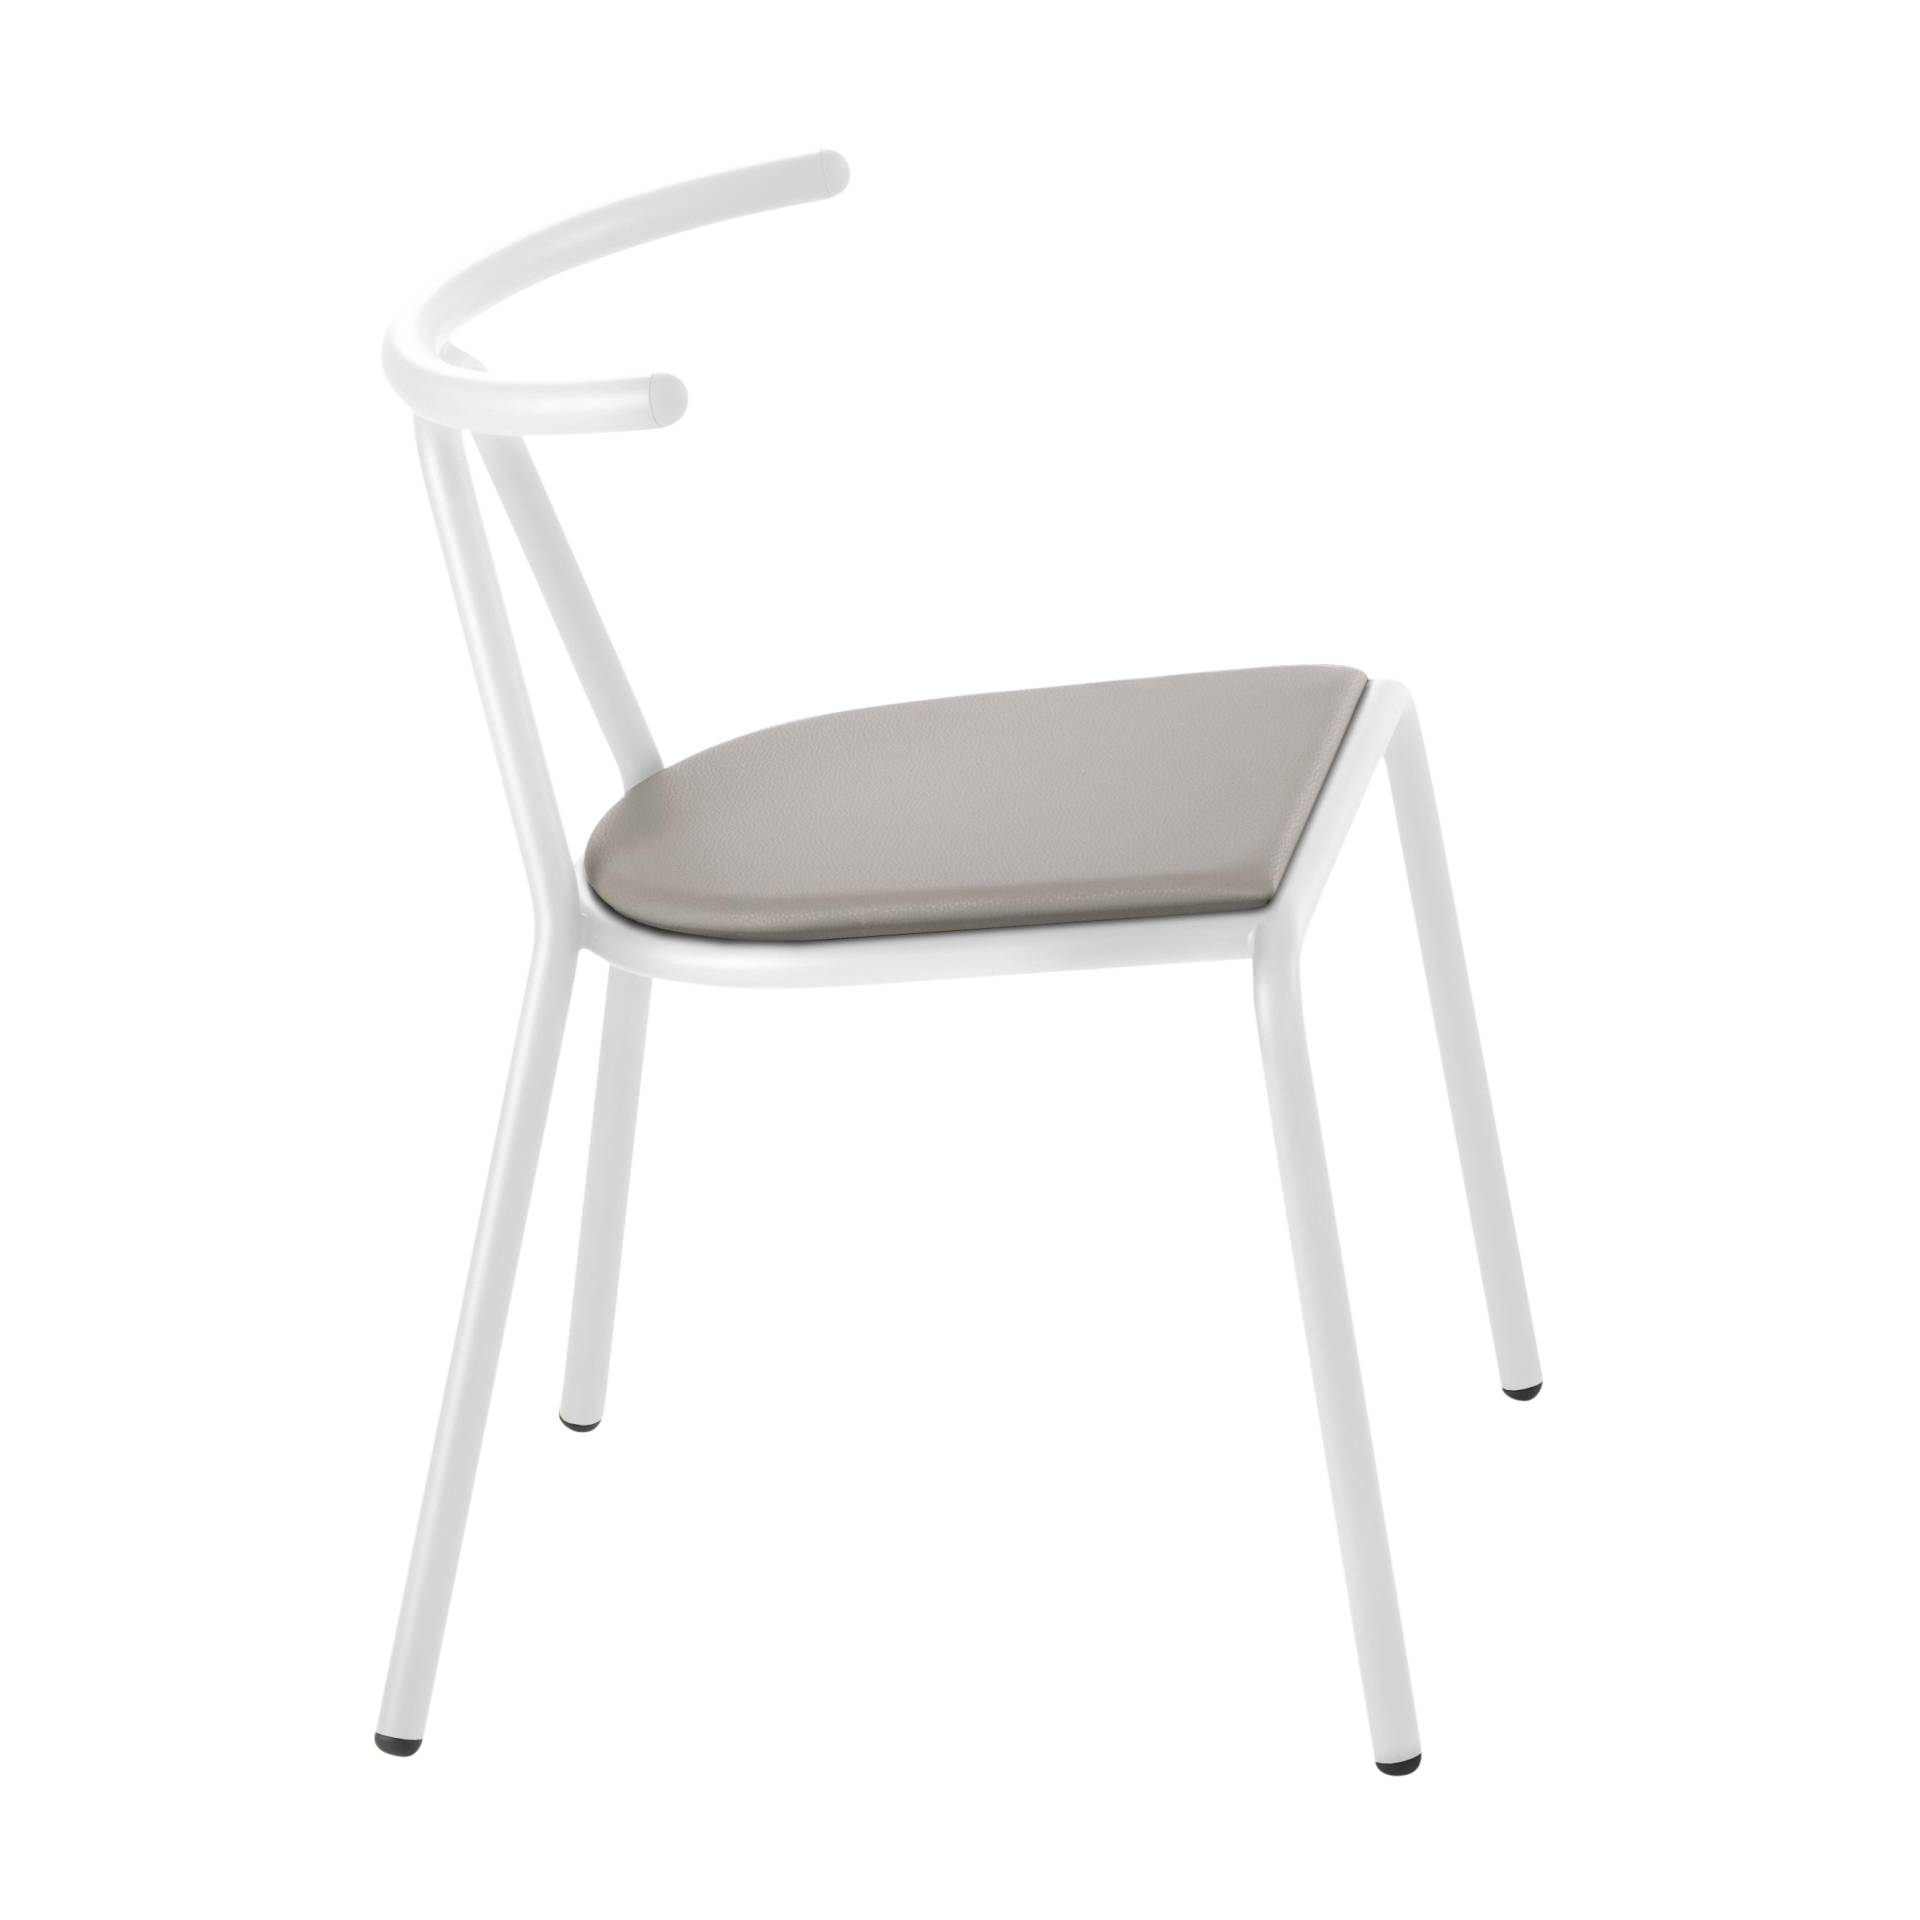 B-Line - Toro Stuhl Sitzfläche Platinum Flukso - grau/Sitzfläche: Platinum Flukso/Gestell weiß/BxHxT 55x73,5x54cm von B-Line